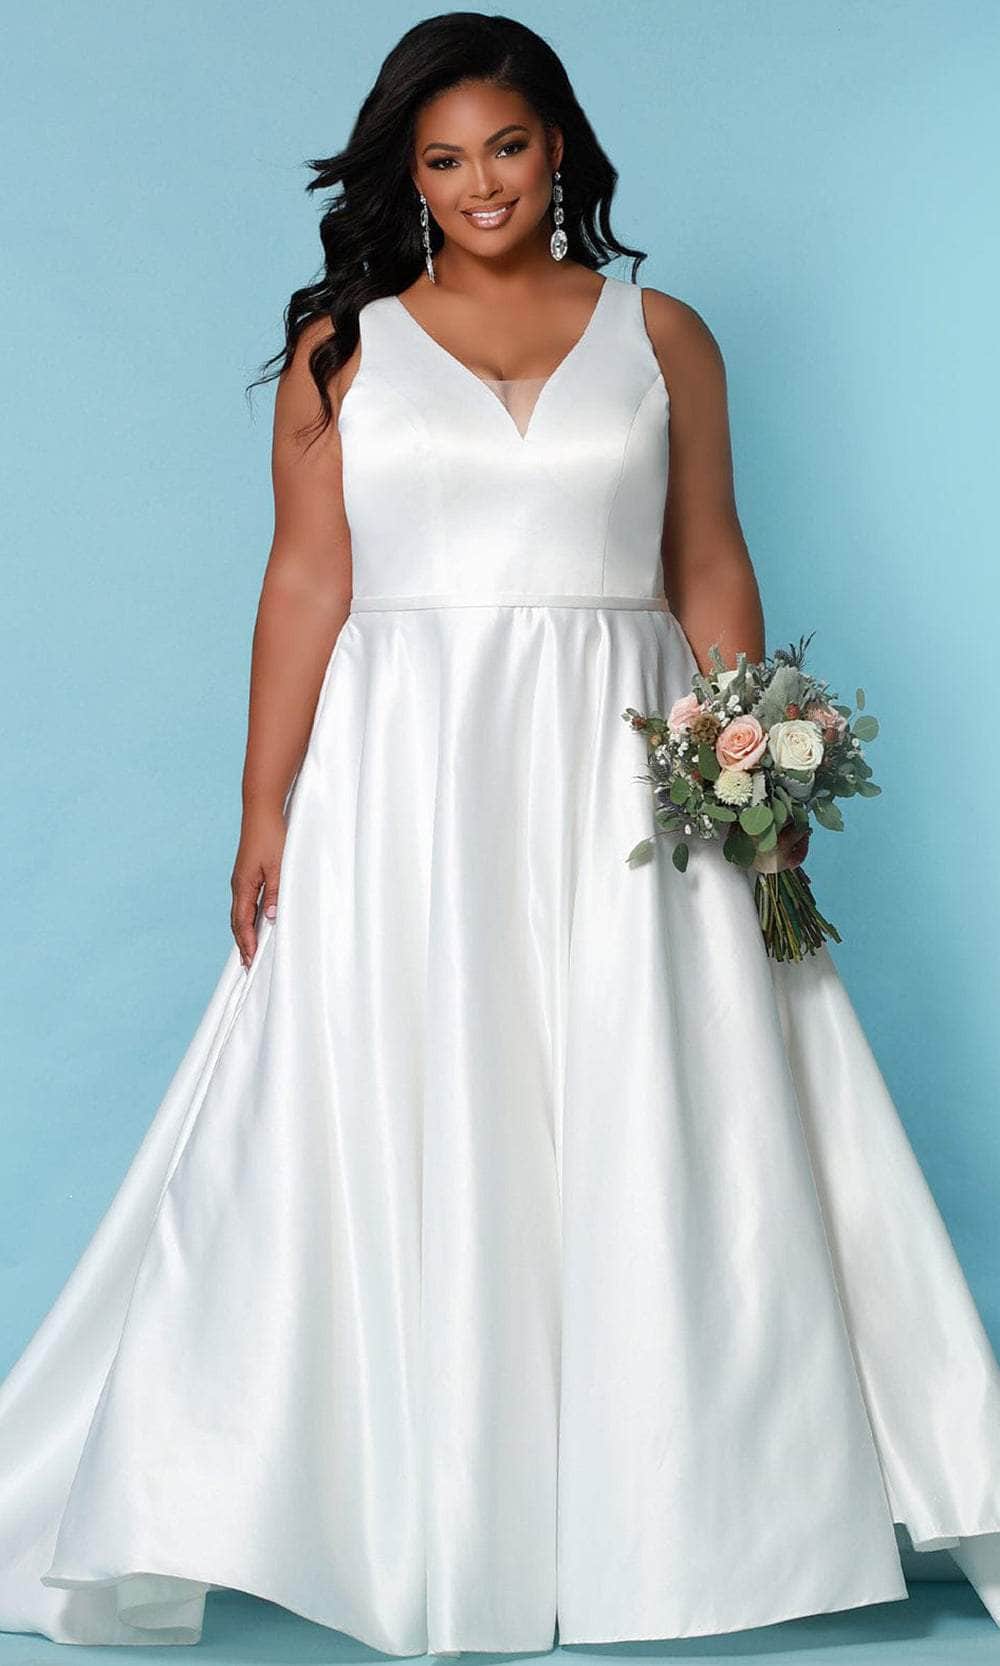 Sydney's Closet Bridal - SC5272 Lace Paneled Bridal Gown
